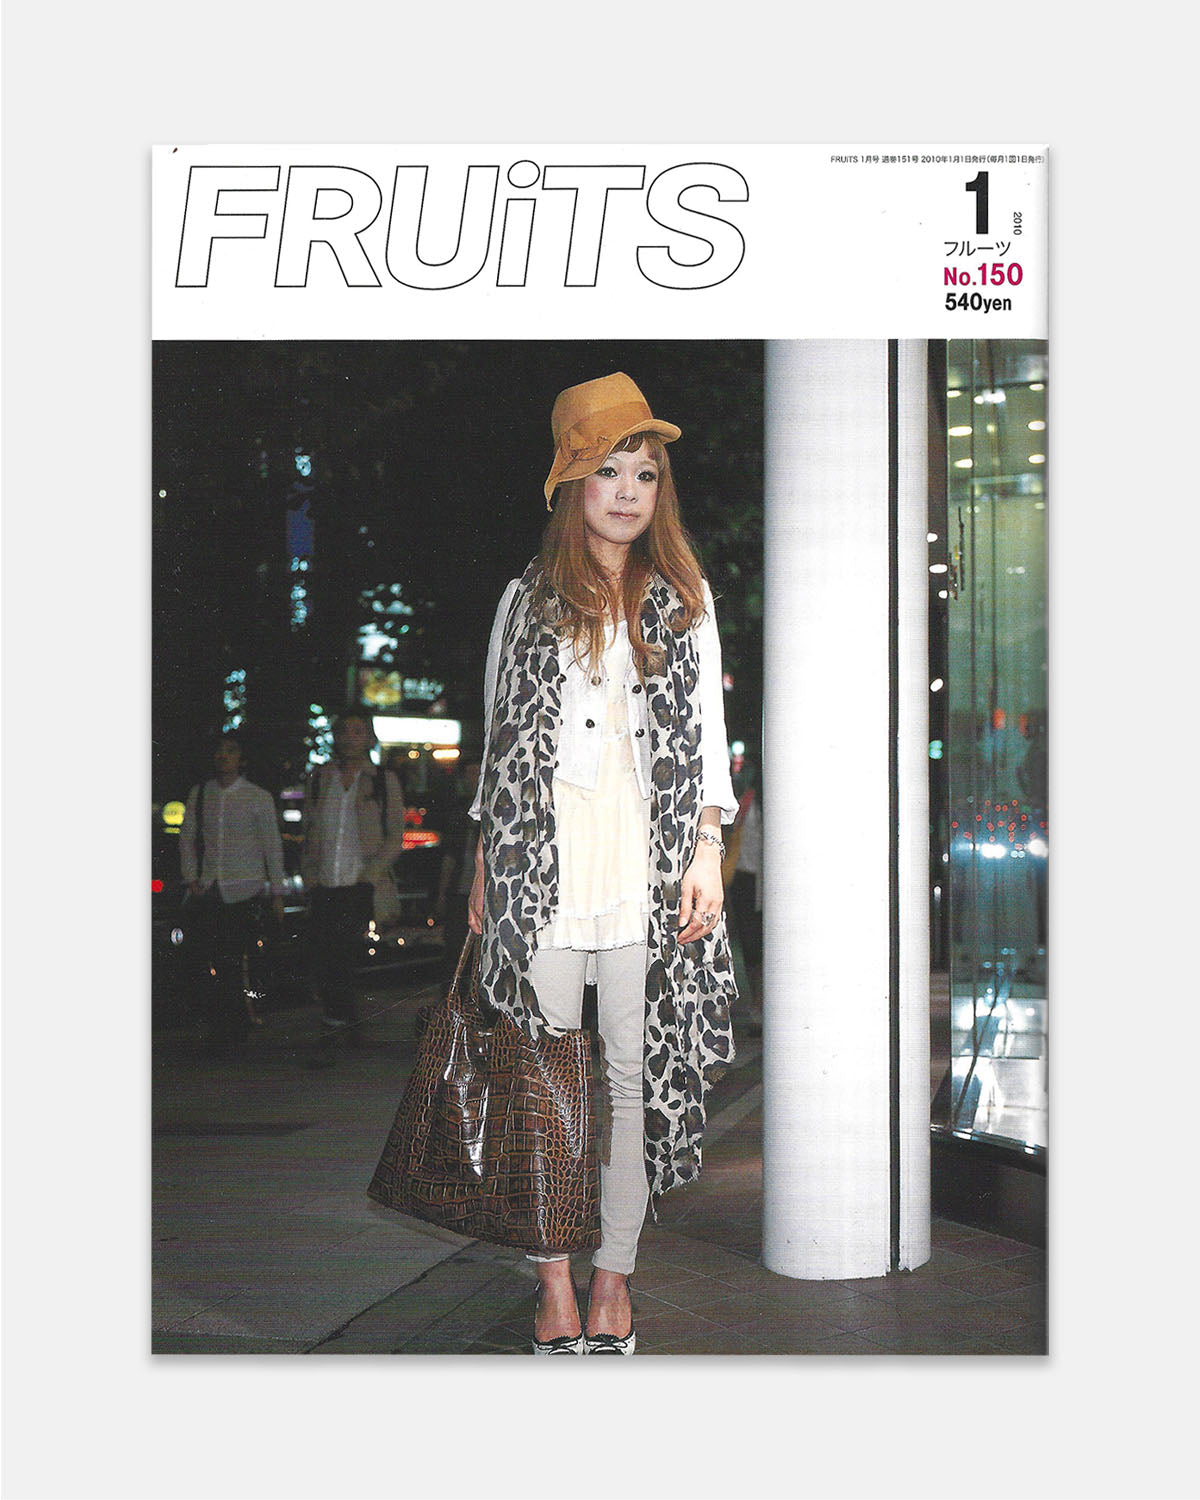 Fruits Magazine January 2010 (#150)